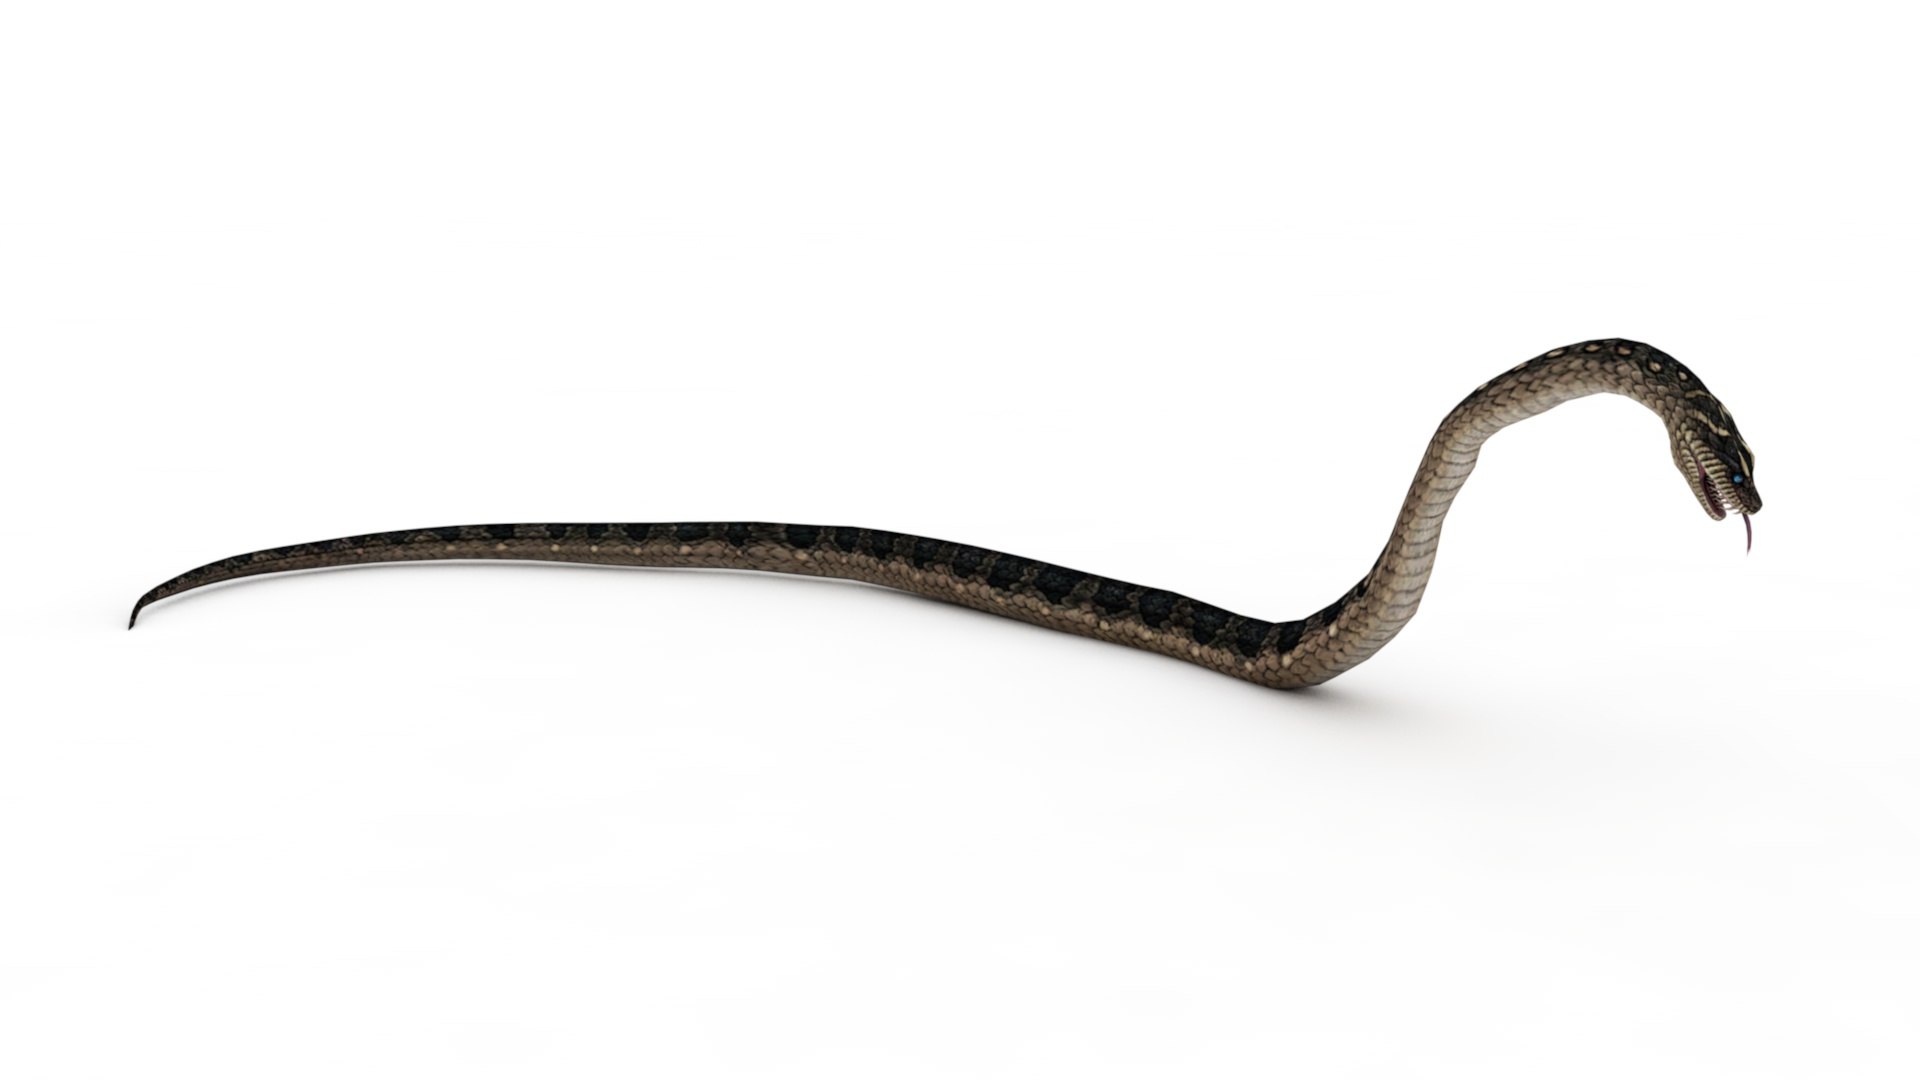 Serpente Na Tela Prank Serpente Tela, Serpentes Na Tela 3D Snake Reptile  Online, serpente, animais, escalado réptil png